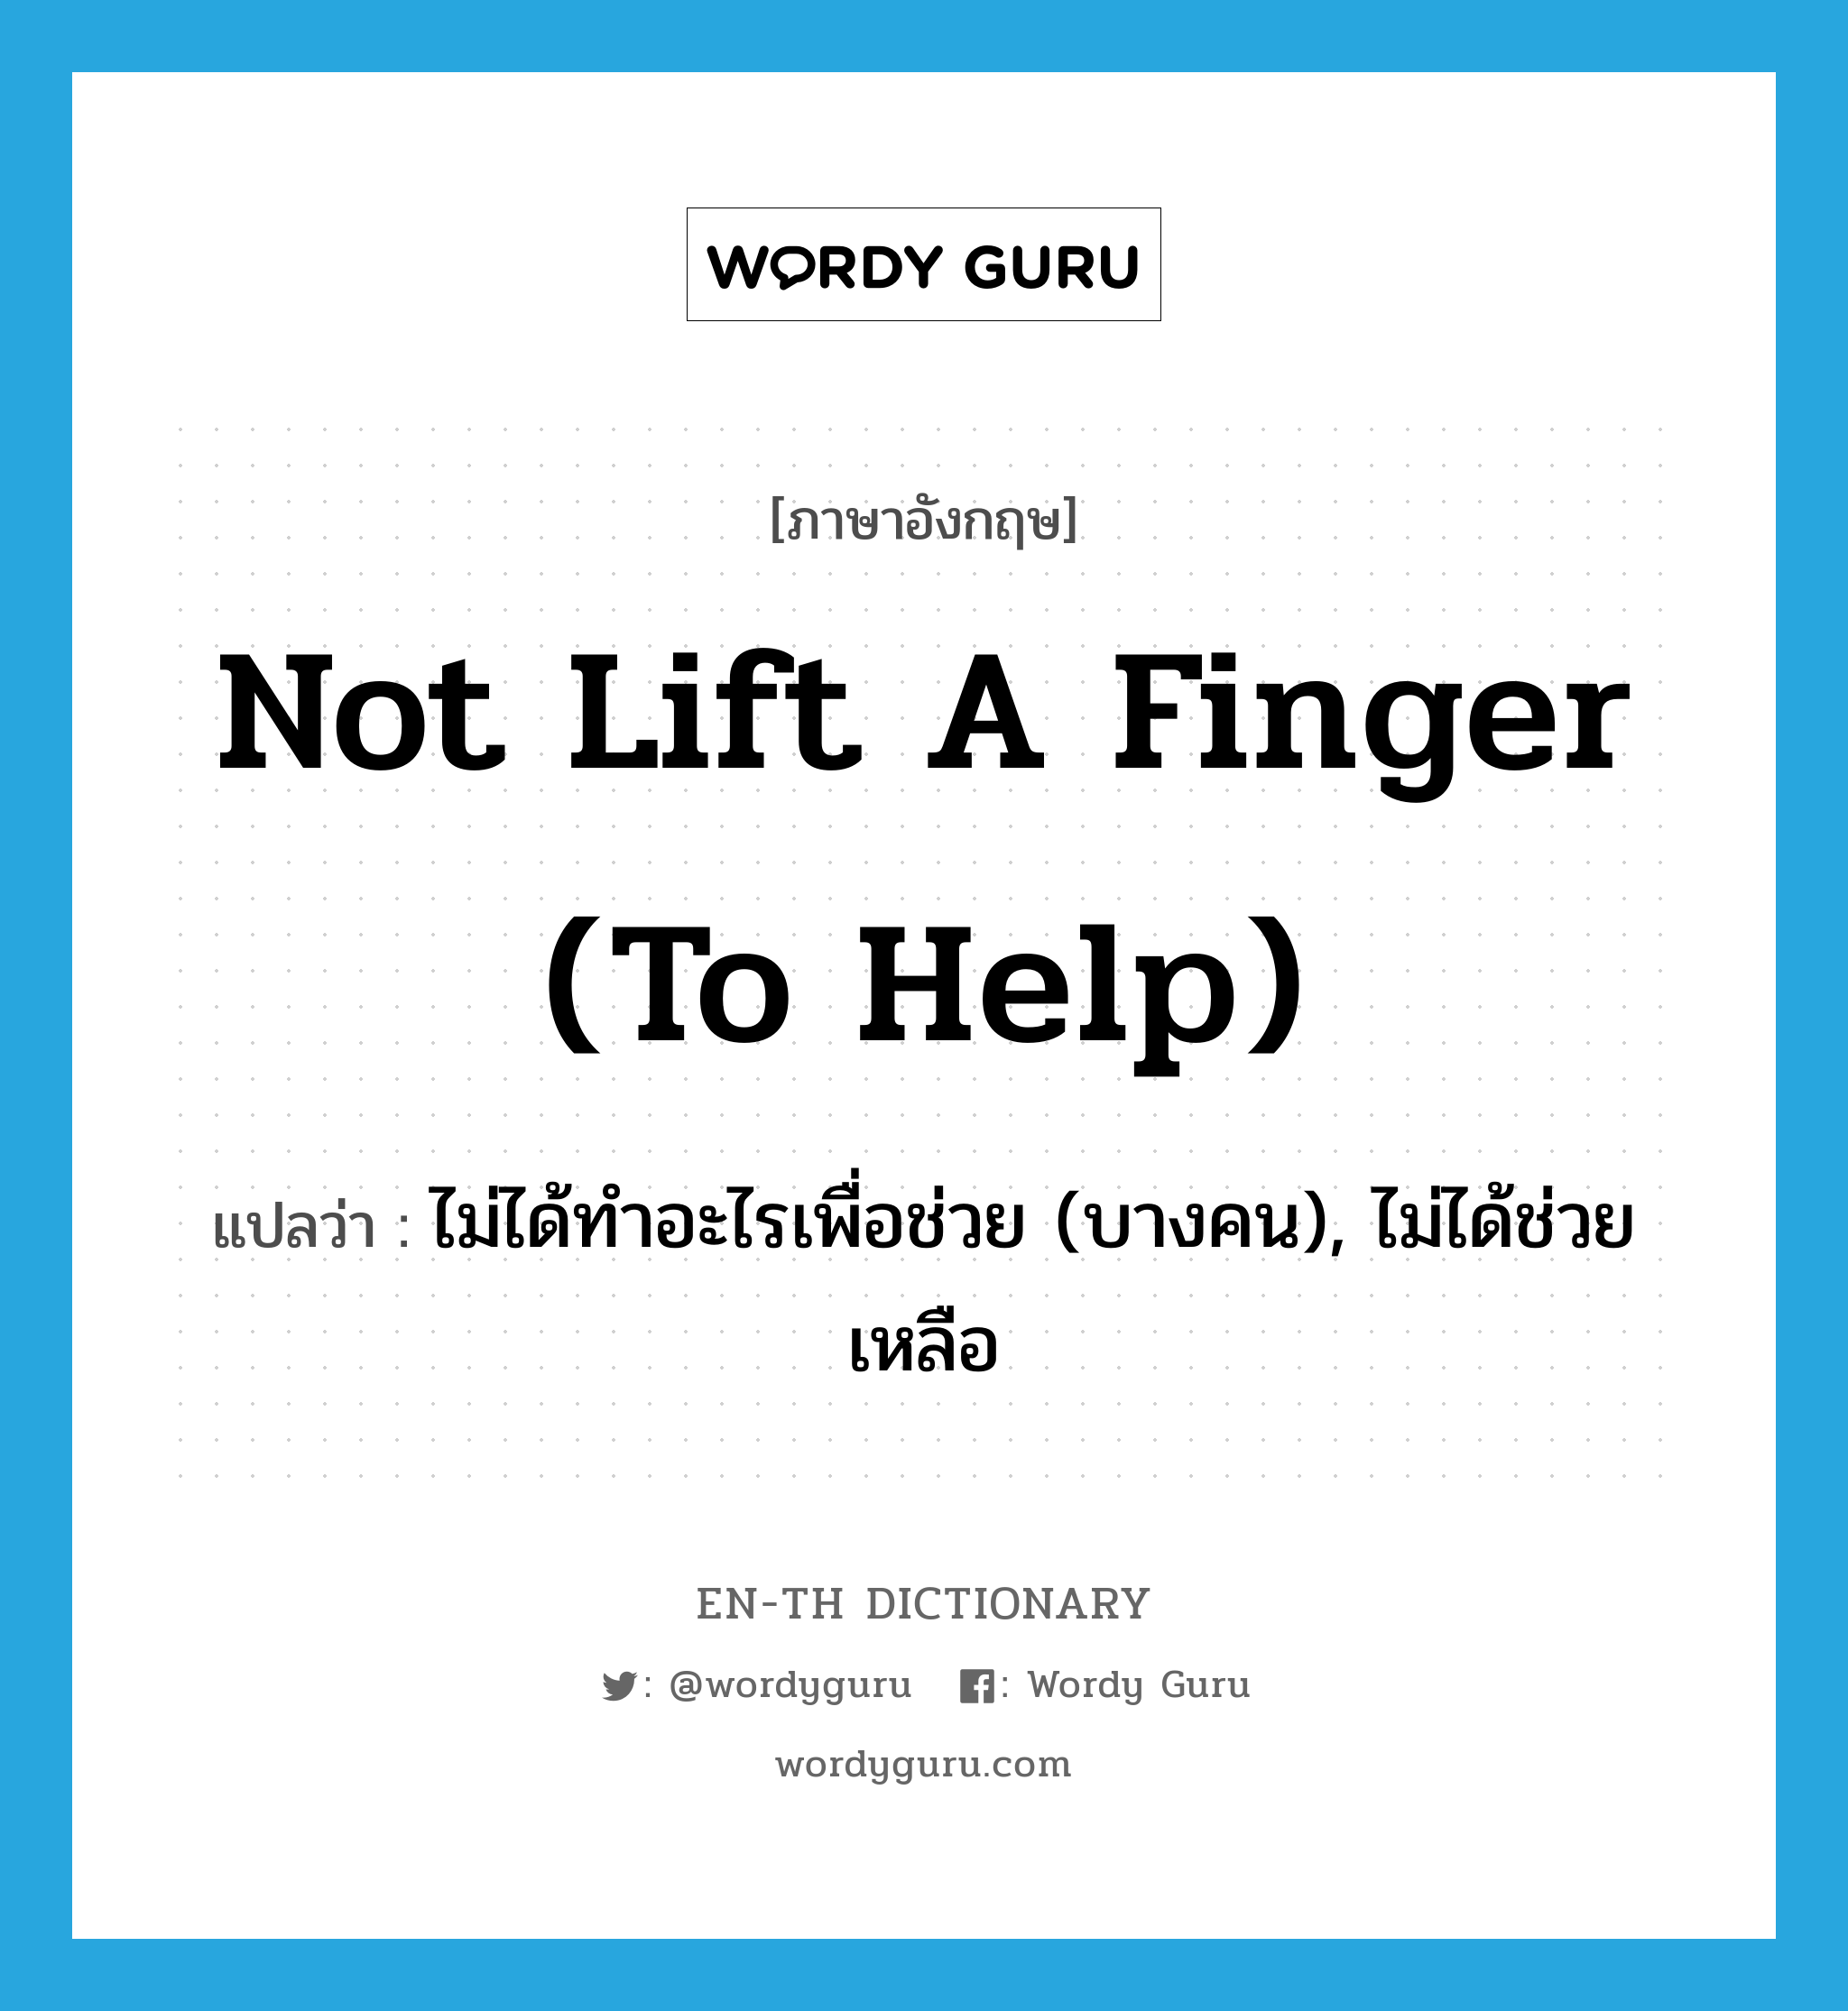 ไม่ได้ทำอะไรเพื่อช่วย (บางคน), ไม่ได้ช่วยเหลือ ภาษาอังกฤษ?, คำศัพท์ภาษาอังกฤษ ไม่ได้ทำอะไรเพื่อช่วย (บางคน), ไม่ได้ช่วยเหลือ แปลว่า not lift a finger (to help) ประเภท IDM หมวด IDM